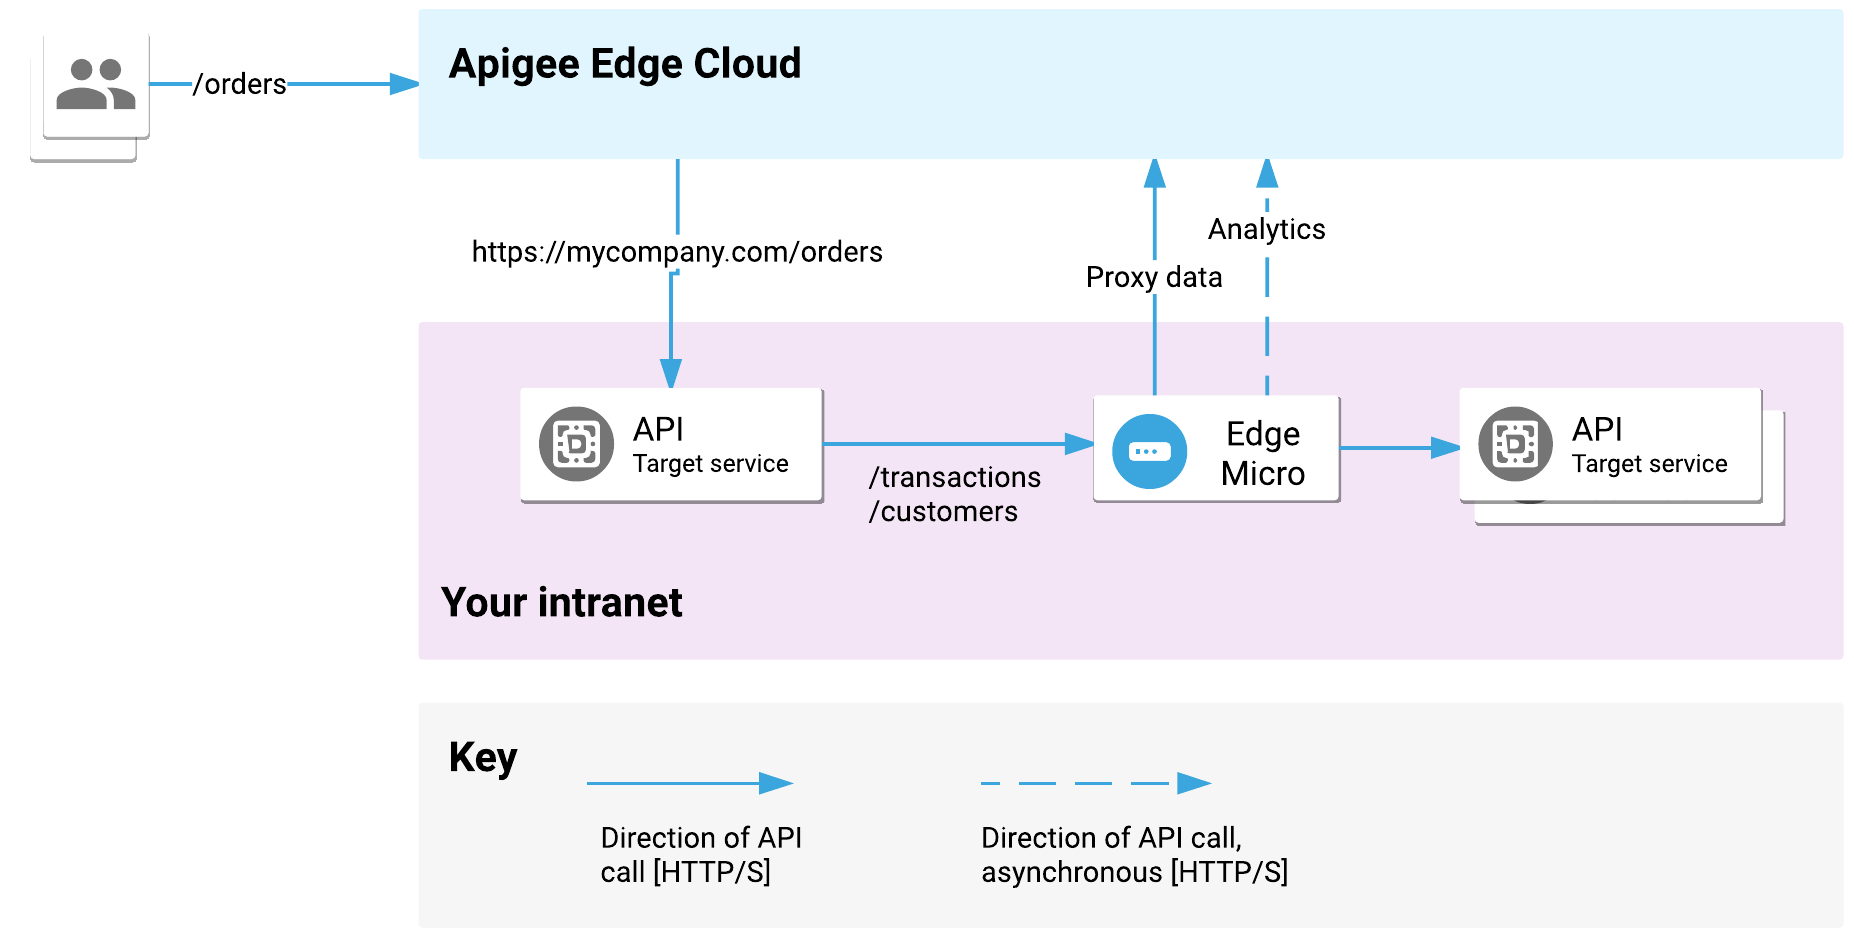 Edge Cloud पर बनाई गई एपीआई प्रॉक्सी आपके इंट्रानेट पर सेवाओं को टारगेट करने के लिए भेजी जाती हैं और टारगेट सेवाएं आपके इंट्रानेट पर Edge माइक्रोगेटवे को अनुरोध भेजती हैं.
              इसके बाद, माइक्रोगेटवे आपके इंट्रानेट पर अन्य टारगेट एपीआई सेवाओं को
              अनुरोध भेजता है.